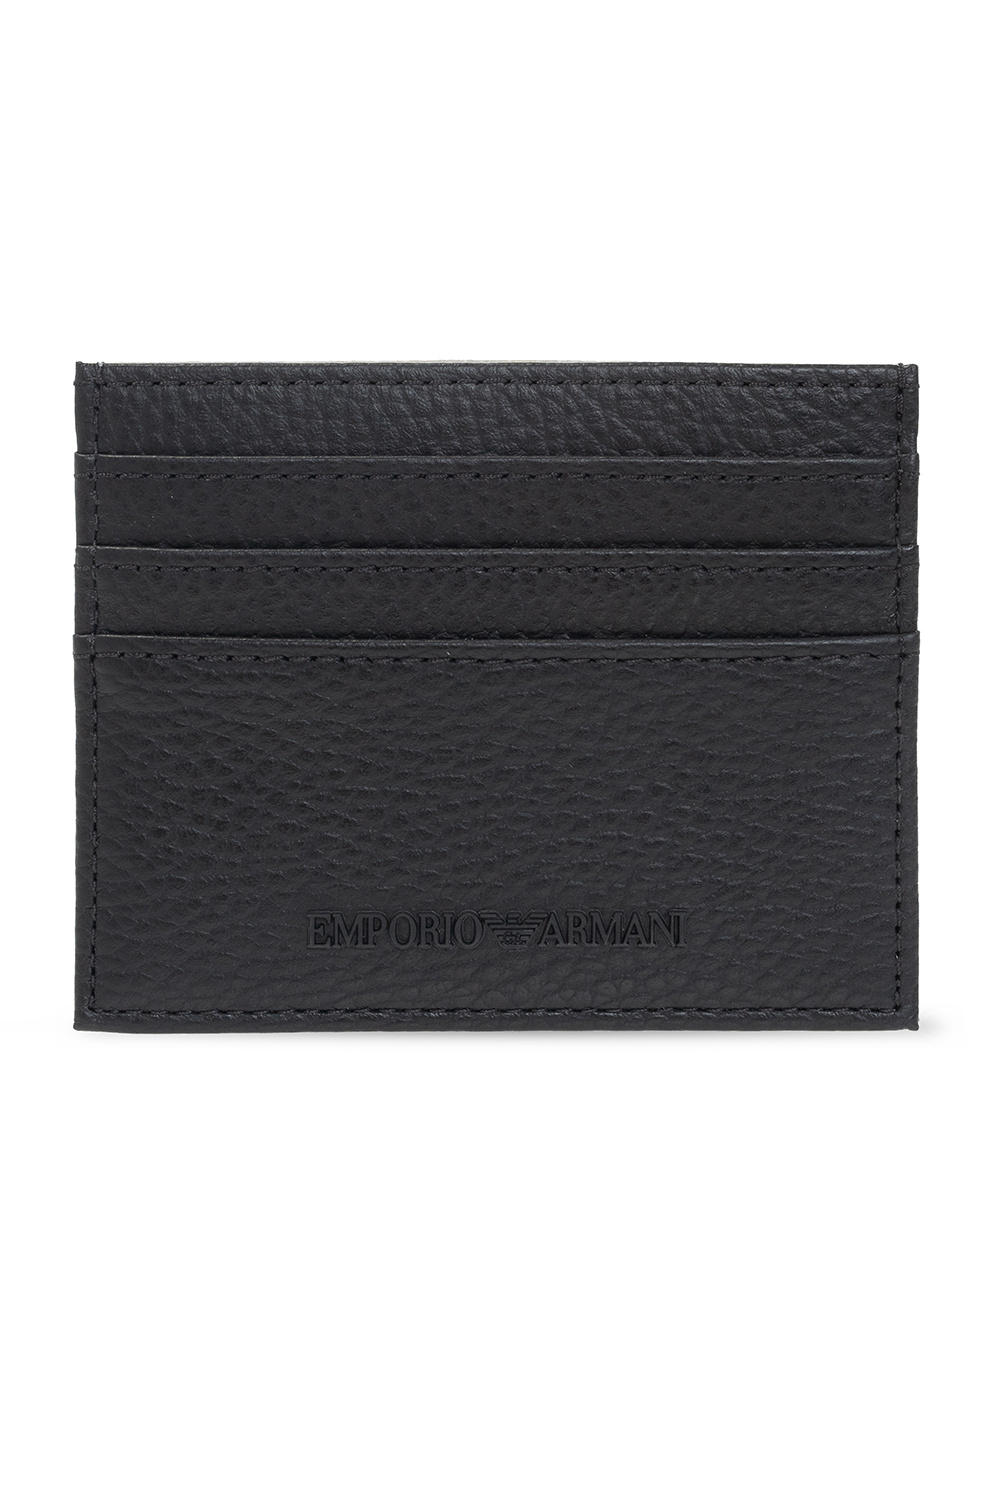 Emporio Armani Leather card case